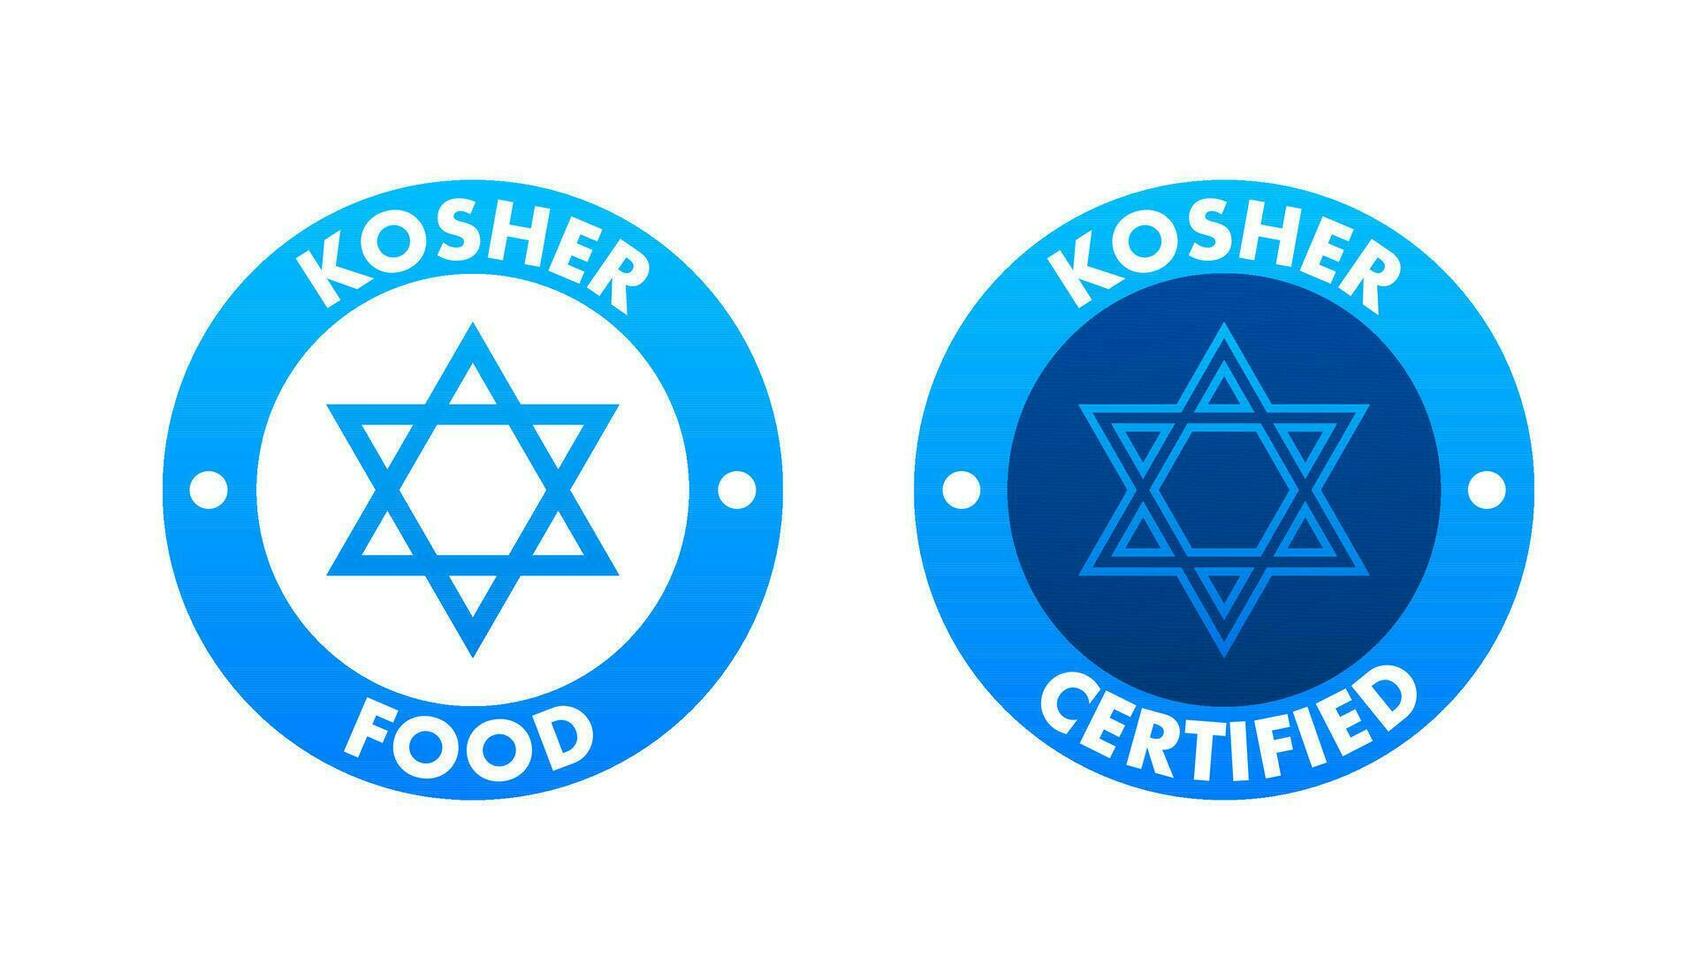 comestible según la ley judía comida producto firmar etiqueta, pegatina. certificado comestible según la ley judía signo. vector valores ilustración